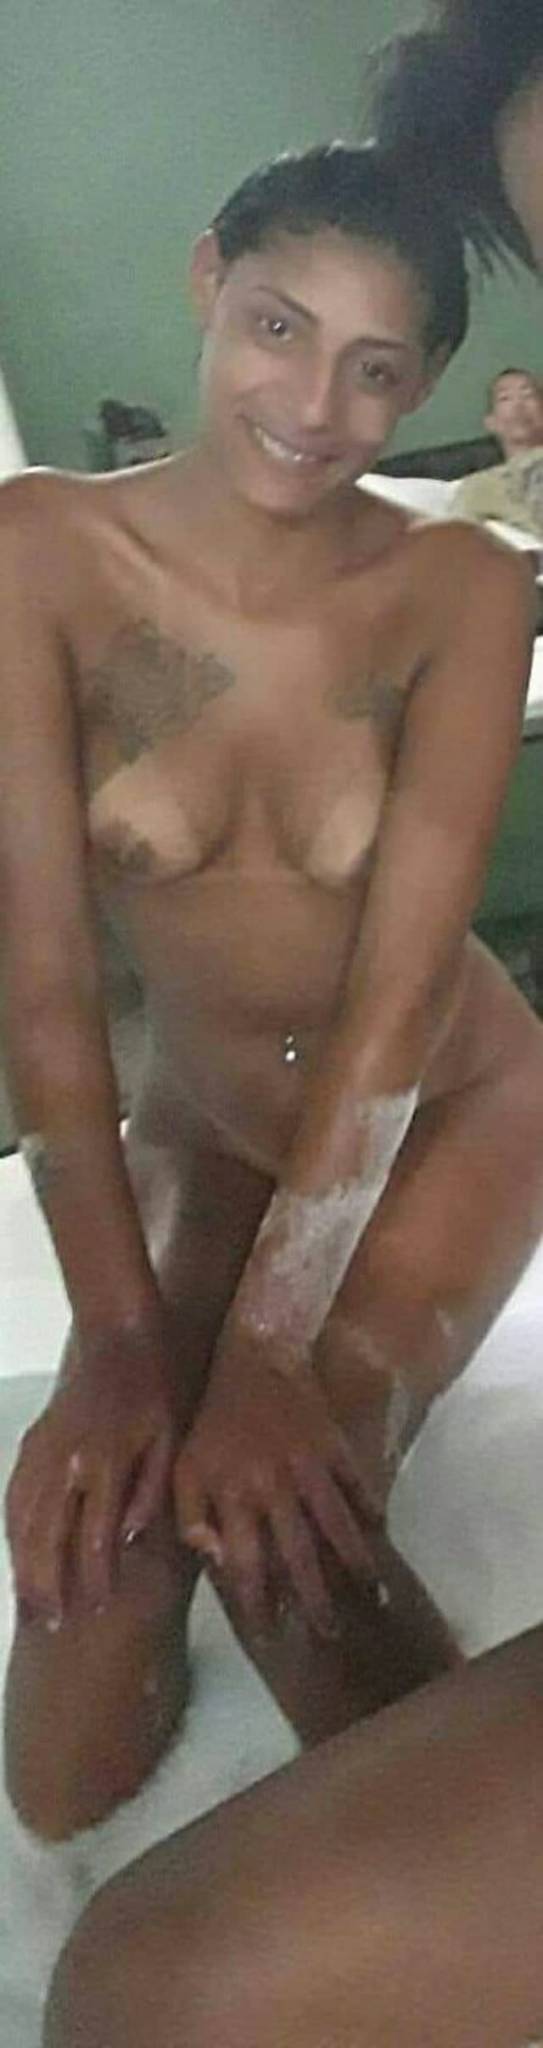 Nicoly da favela caiu no facebook com nudes 3